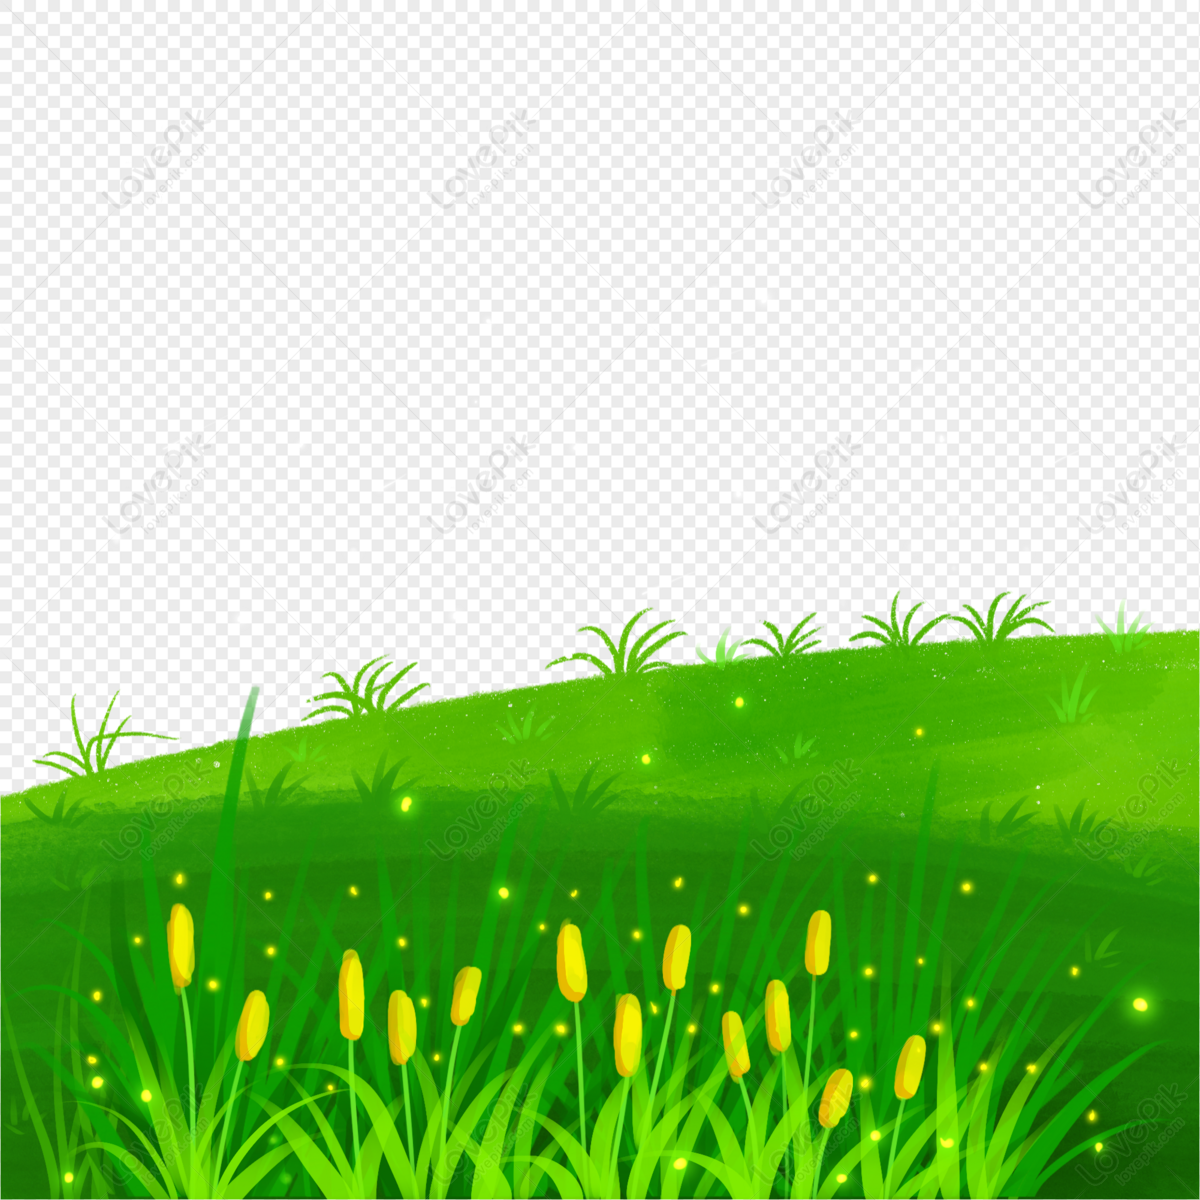 Cắt ngọn cây cỏ png rất tiện lợi trong việc chỉnh sửa hình ảnh. Vào xem ảnh liên quan để khám phá các loại cây cỏ png được thiết kế một cách độc đáo và sống động.